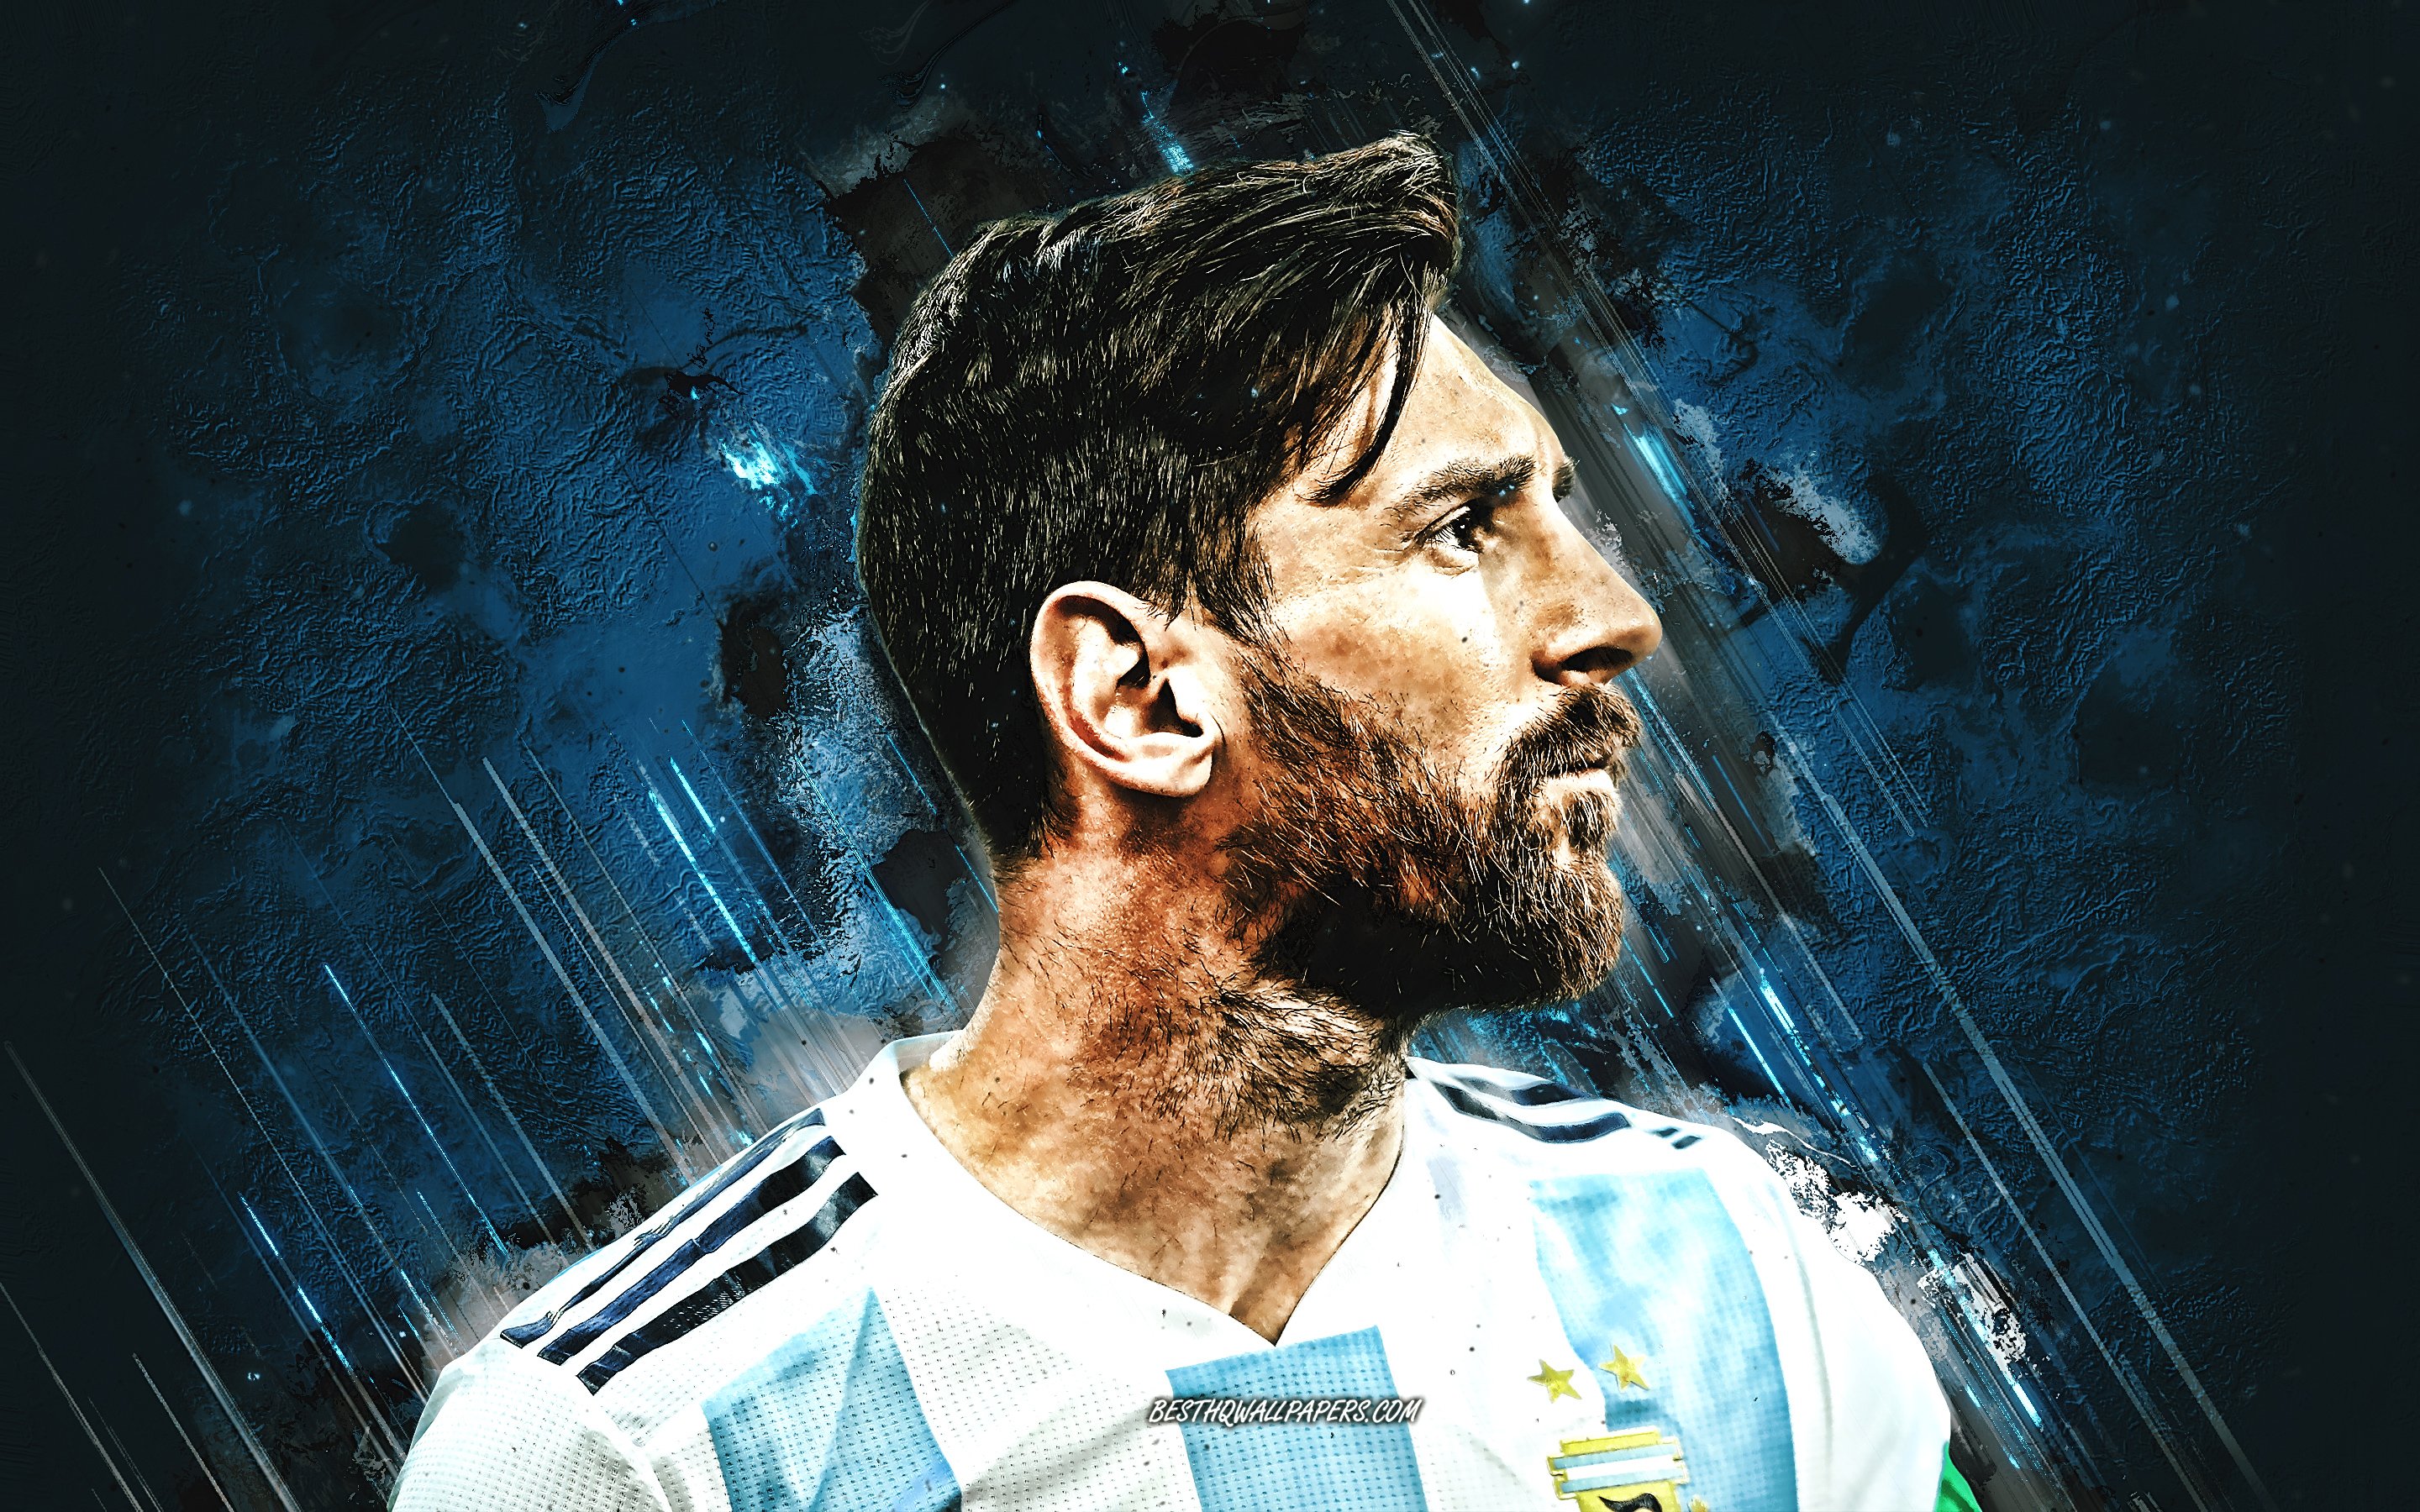 Hình nền Lionel Messi Argentina sẽ khiến những fan hâm mộ của Messi không thể rời mắt khỏi điện thoại. Hãy cùng chiêm ngưỡng hình ảnh của ông vua sân cỏ Argentina và cảm nhận sự uyên bác, khí chất của anh ta trong mỗi tấm hình.